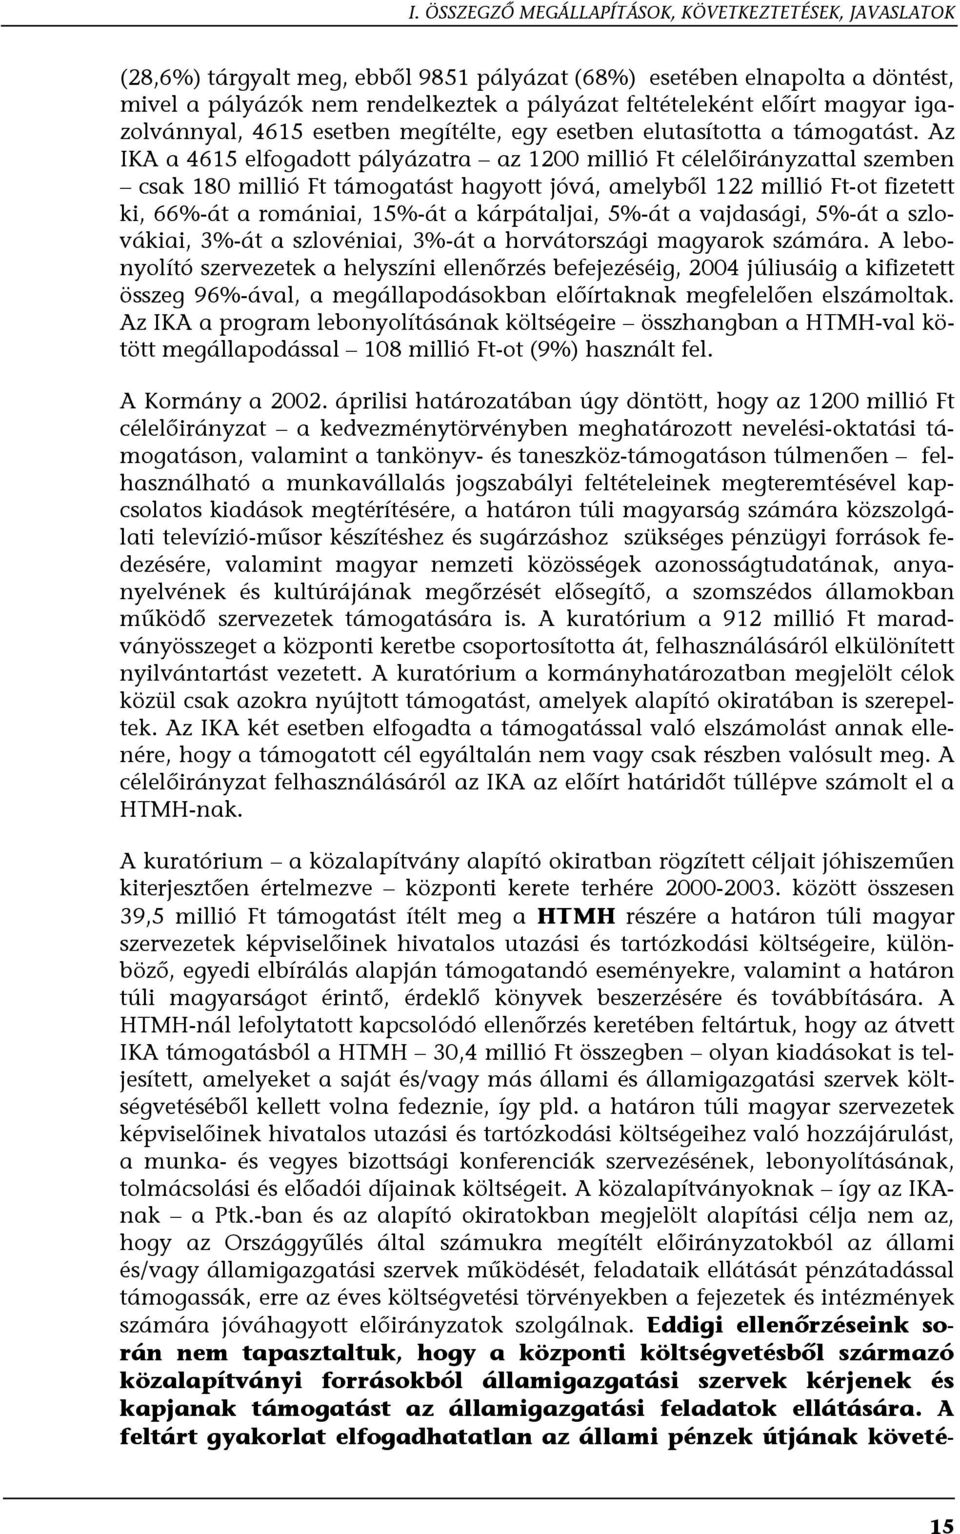 Az IKA a 4615 elfogadott pályázatra az 1200 millió Ft célelőirányzattal szemben csak 180 millió Ft támogatást hagyott jóvá, amelyből 122 millió Ft-ot fizetett ki, 66%-át a romániai, 15%-át a